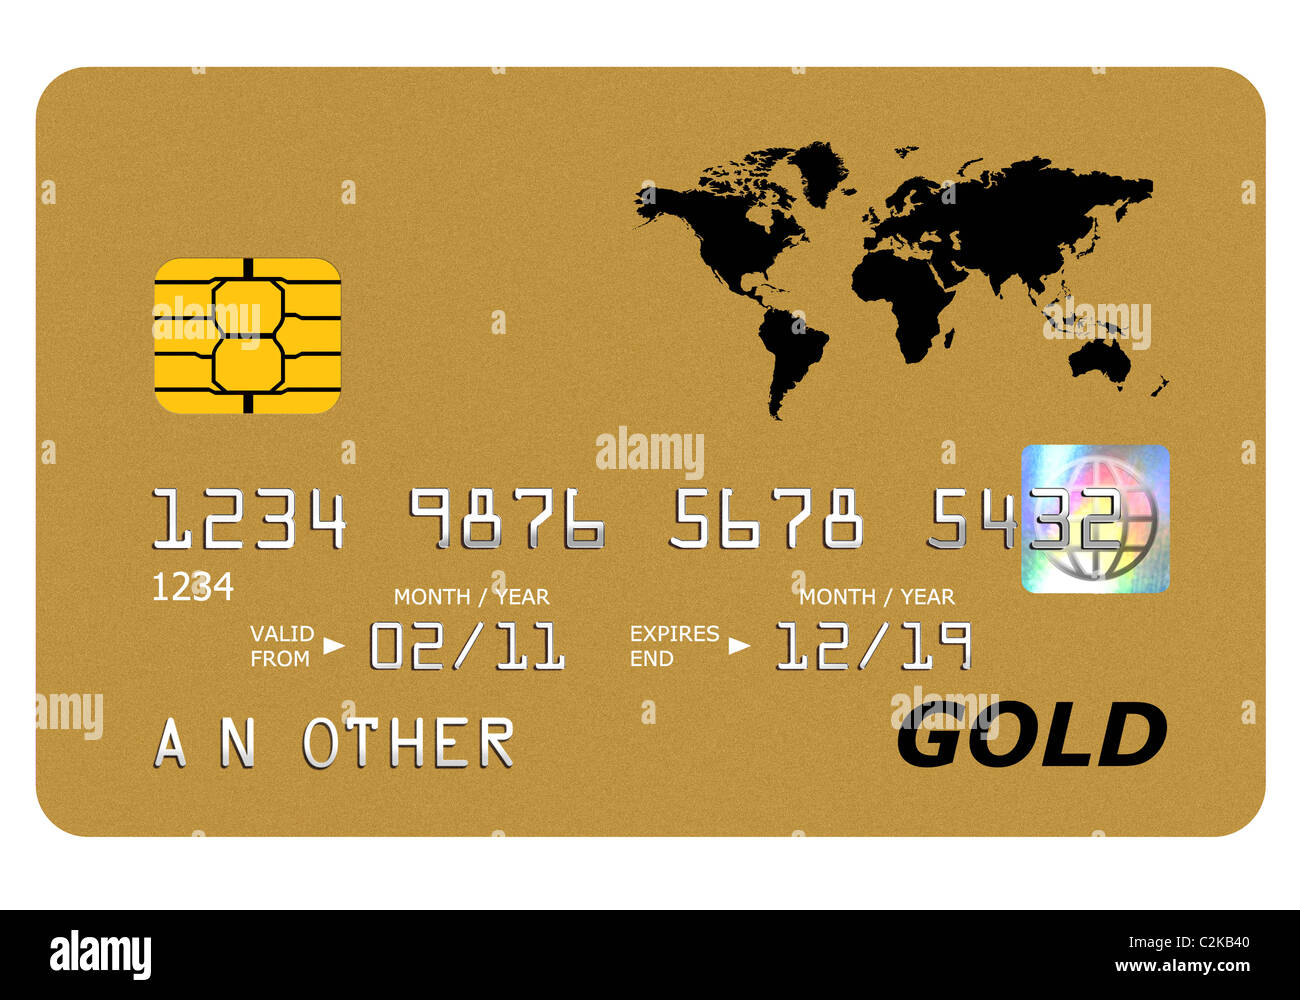 Tutto ciò che è presente su una simulazione di gold card incluso l'ologramma è stato progettato da me, il numero e il nome è generico. Foto Stock